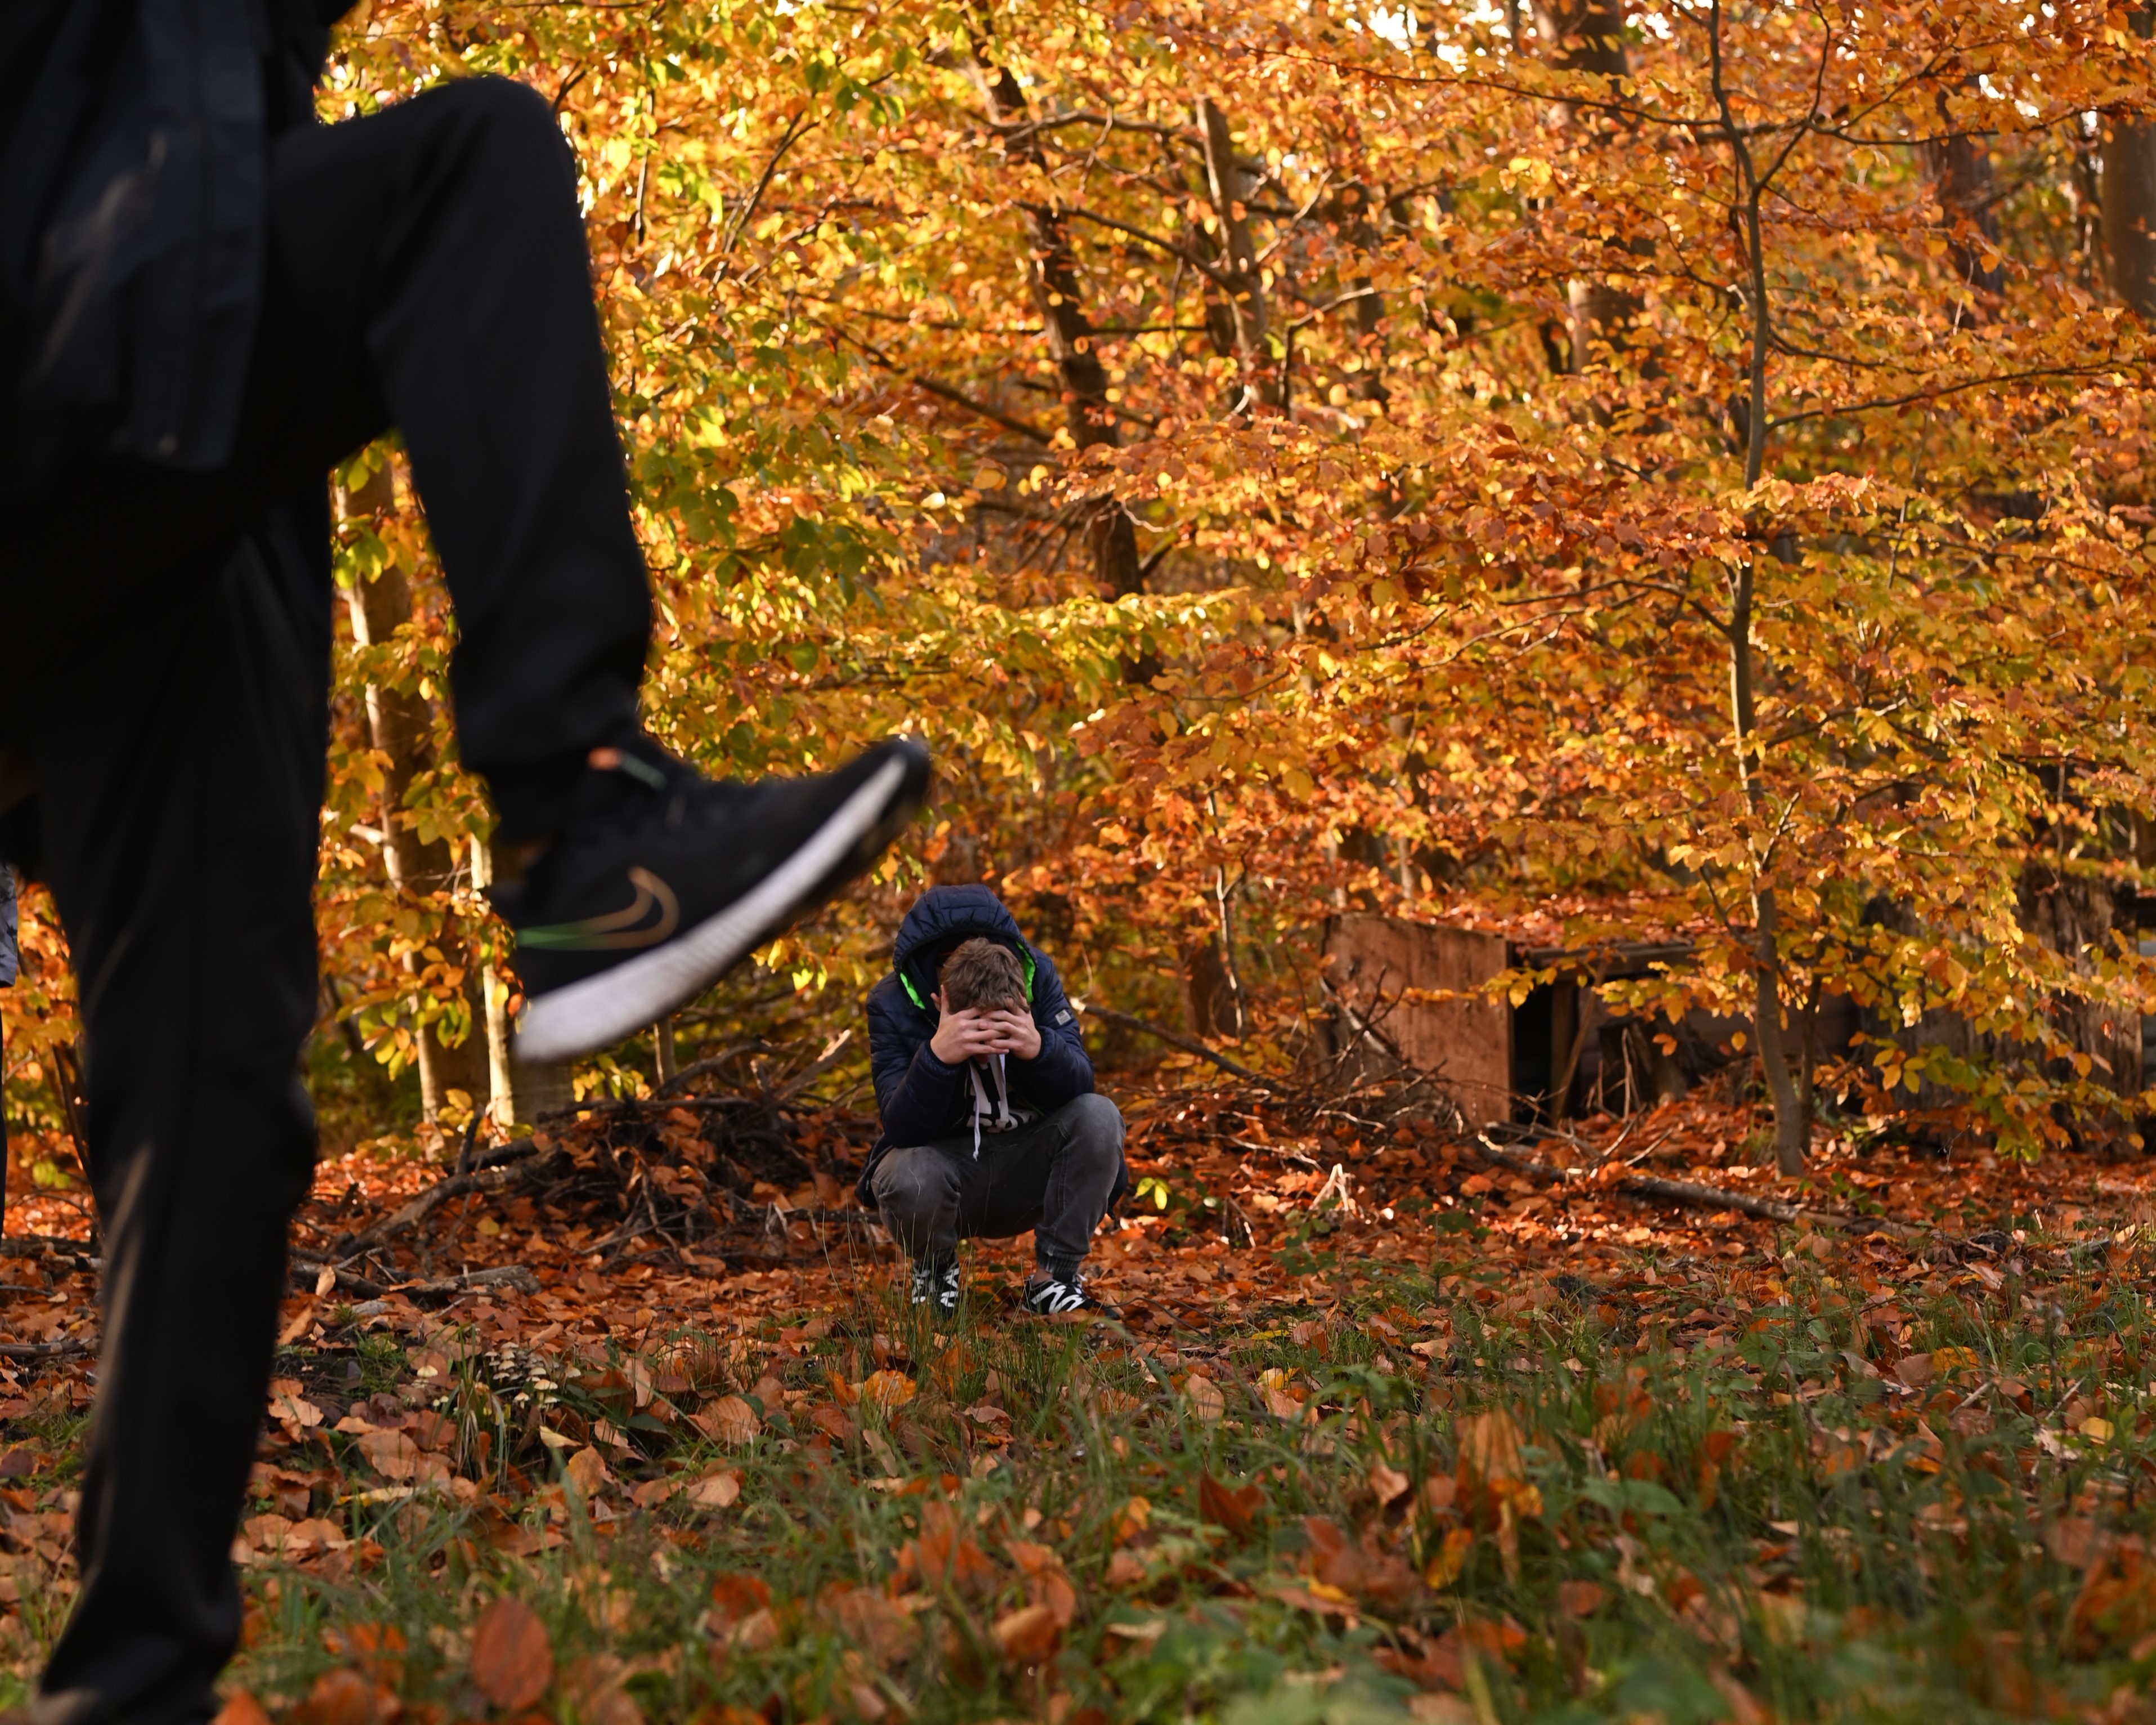 Cykl zajęć z programu „Fajna ferajna”  | Zdjęcie z użyciem perspektywy. Mała sylwetka kucającego, skulonego chłopca na tle jesiennych drzew. Na pierwszym planie ogromne nogi z uniesioną stopą w bucie, jakby ktoś chciał rozdeptać kucającego.JPG